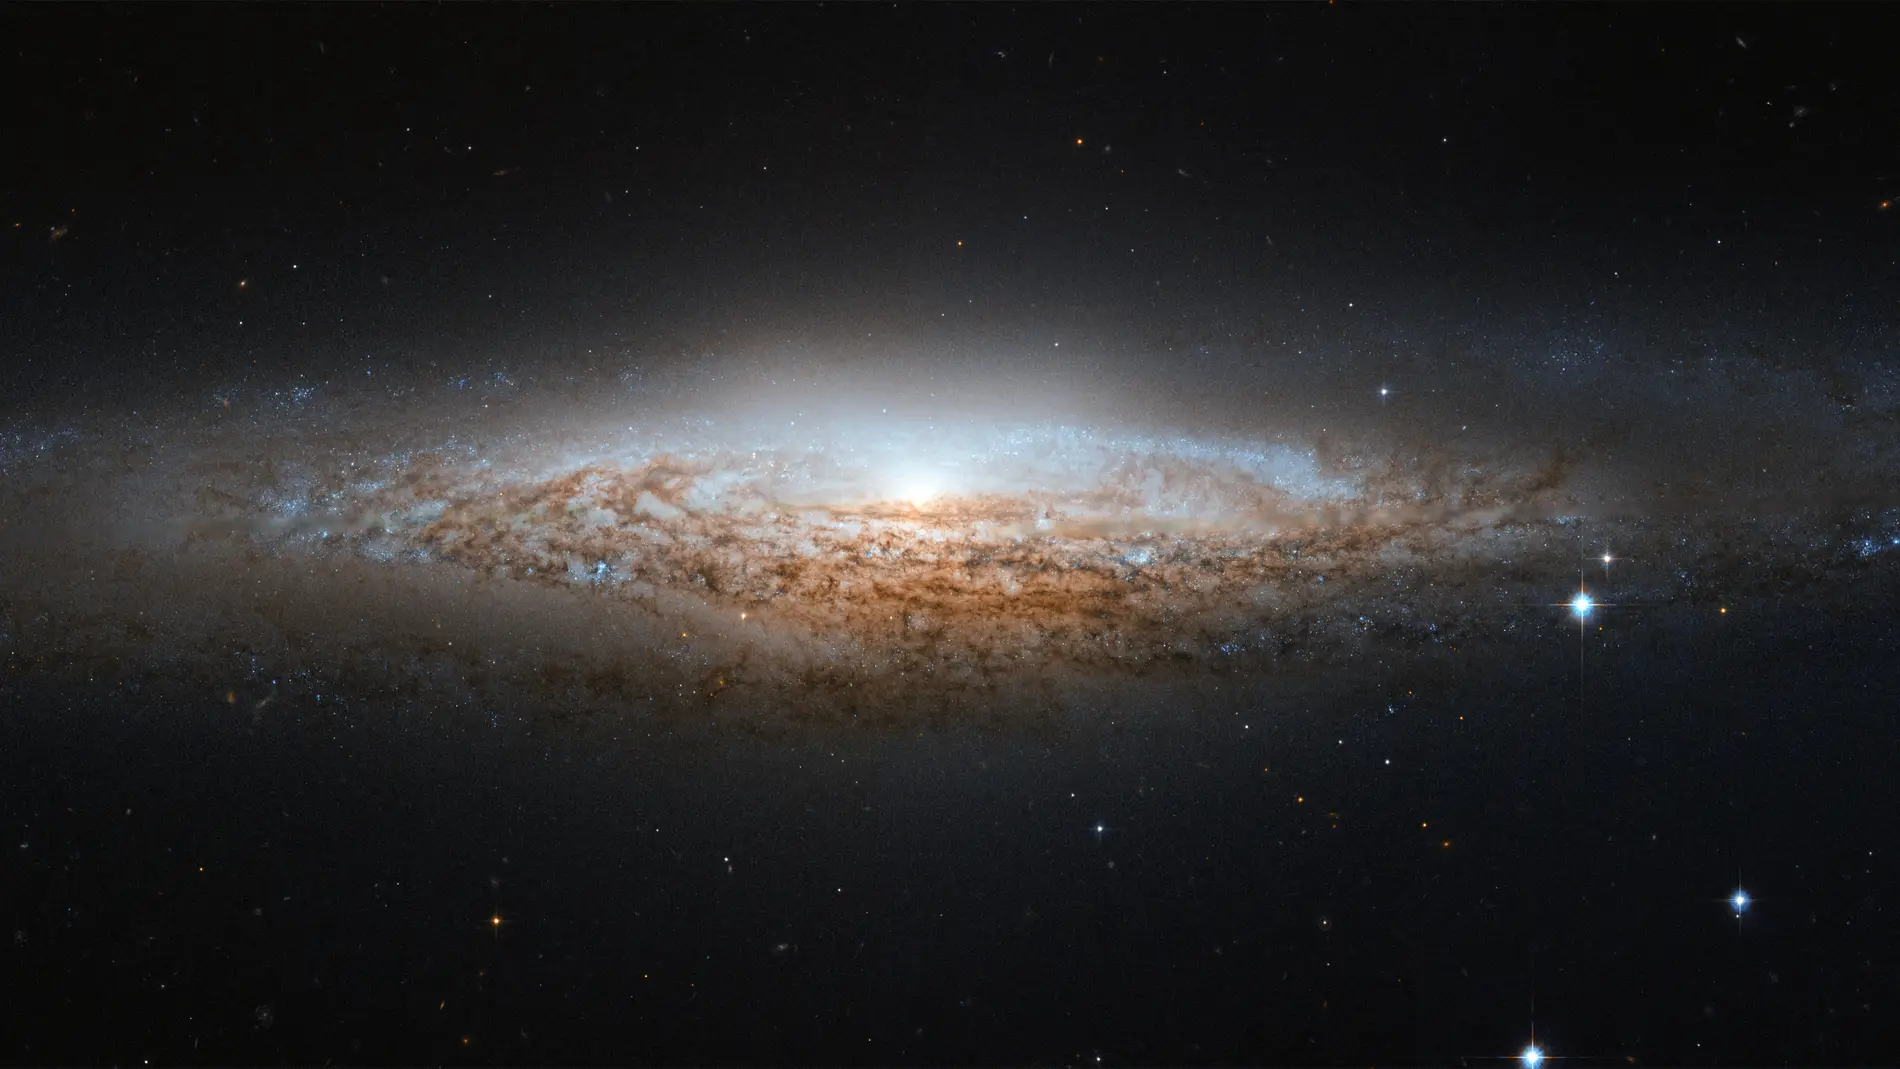 La fuerza de la gravedad ejercida por la materia visible no es suficiente para explicar el comportamiento de las galaxias